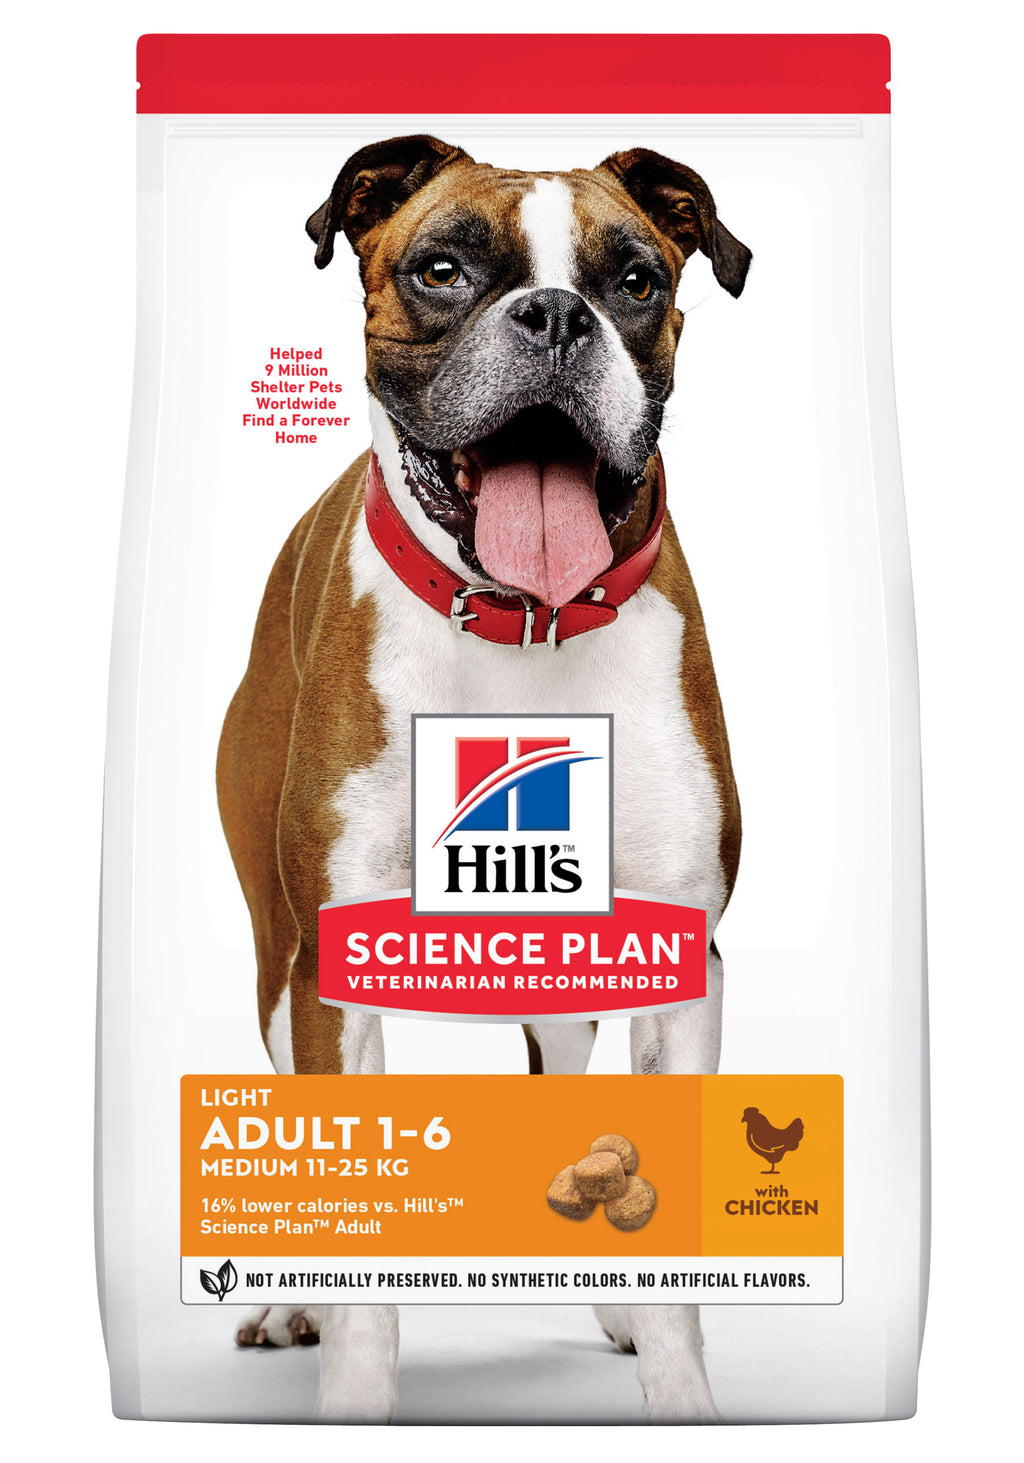 Hill's Science Plan Hund Adult Light Medium Trockenfutter Huhn - 14kg - 4yourdog